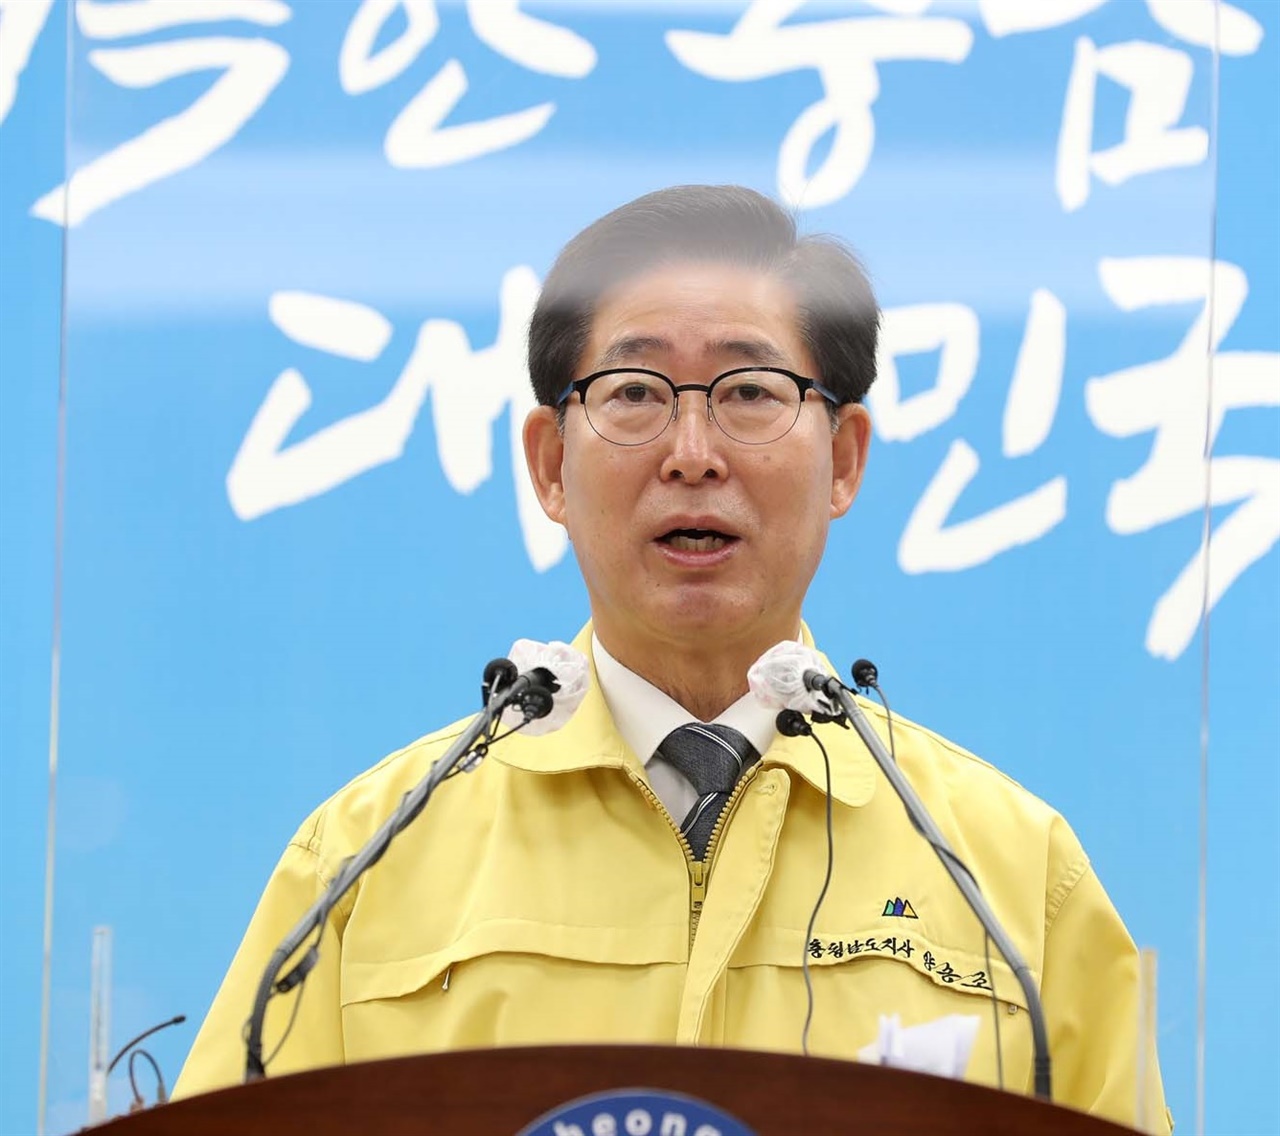 양승조 지사가 25일 천안·아산지역에 방역강화 행정명령을 발동한다고 밝히고 있다.
